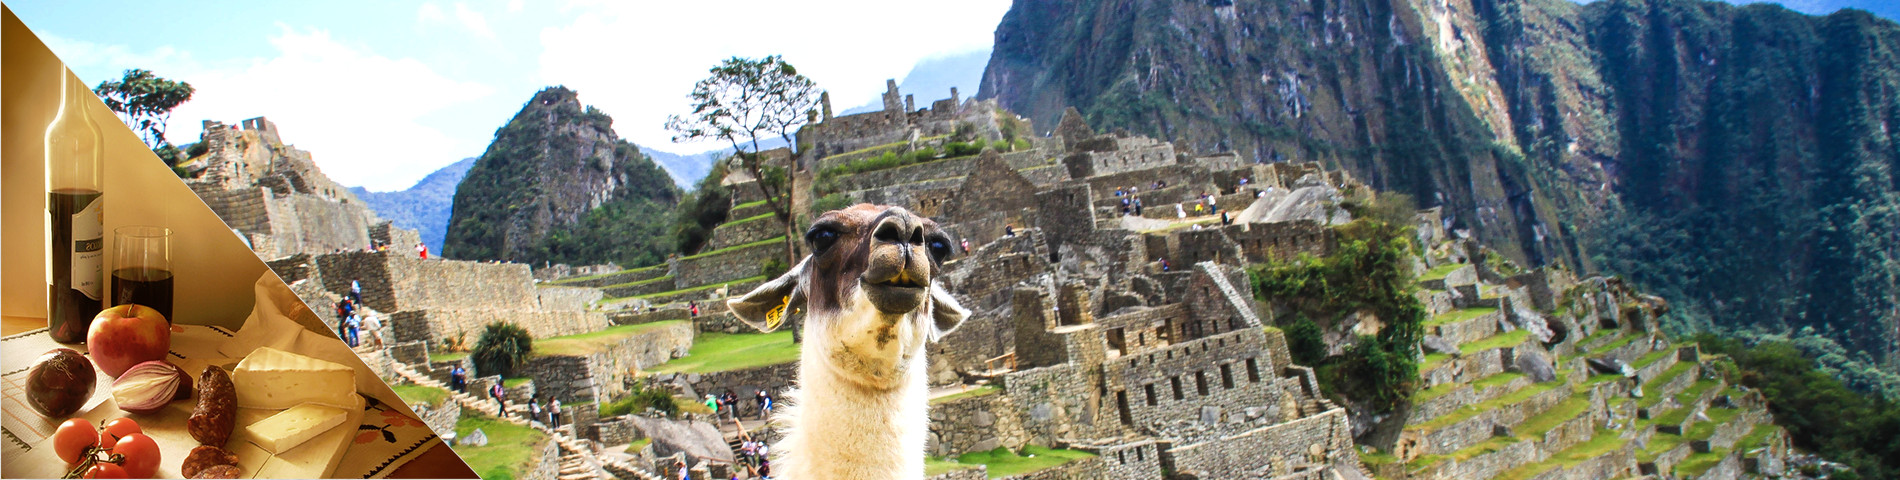 Peru - Spansk & Kultur